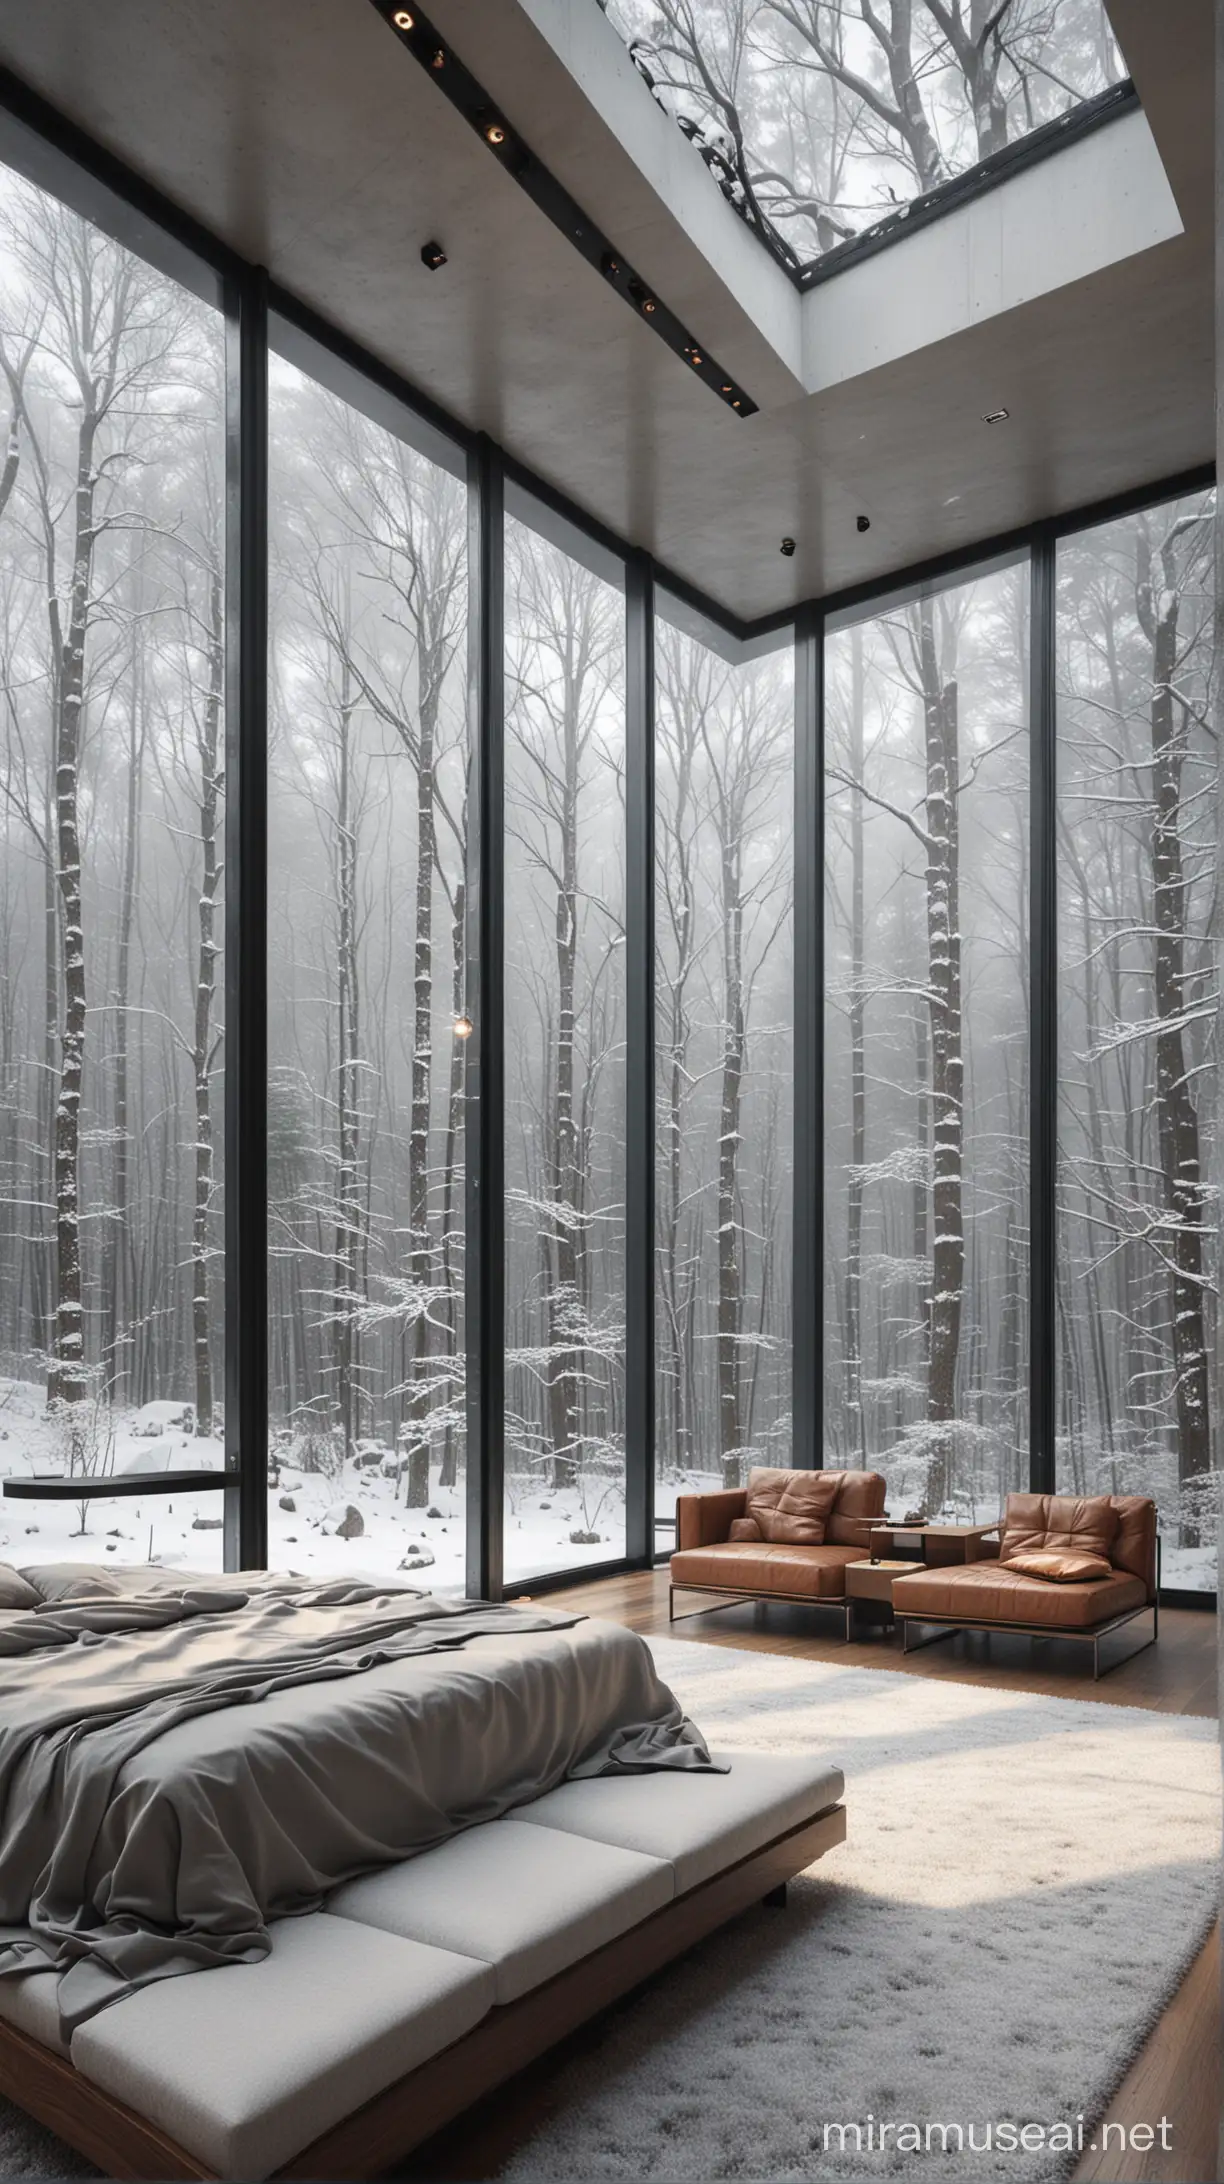 阴天雨后，森林深处，现代风格，大豪宅客厅，大玻璃落地窗能看见外面的森林雪景，中间有舒适的大床，真实拍摄，利用辛烷值渲染风格，呈现出超现实却又惊人真实的建筑插画。